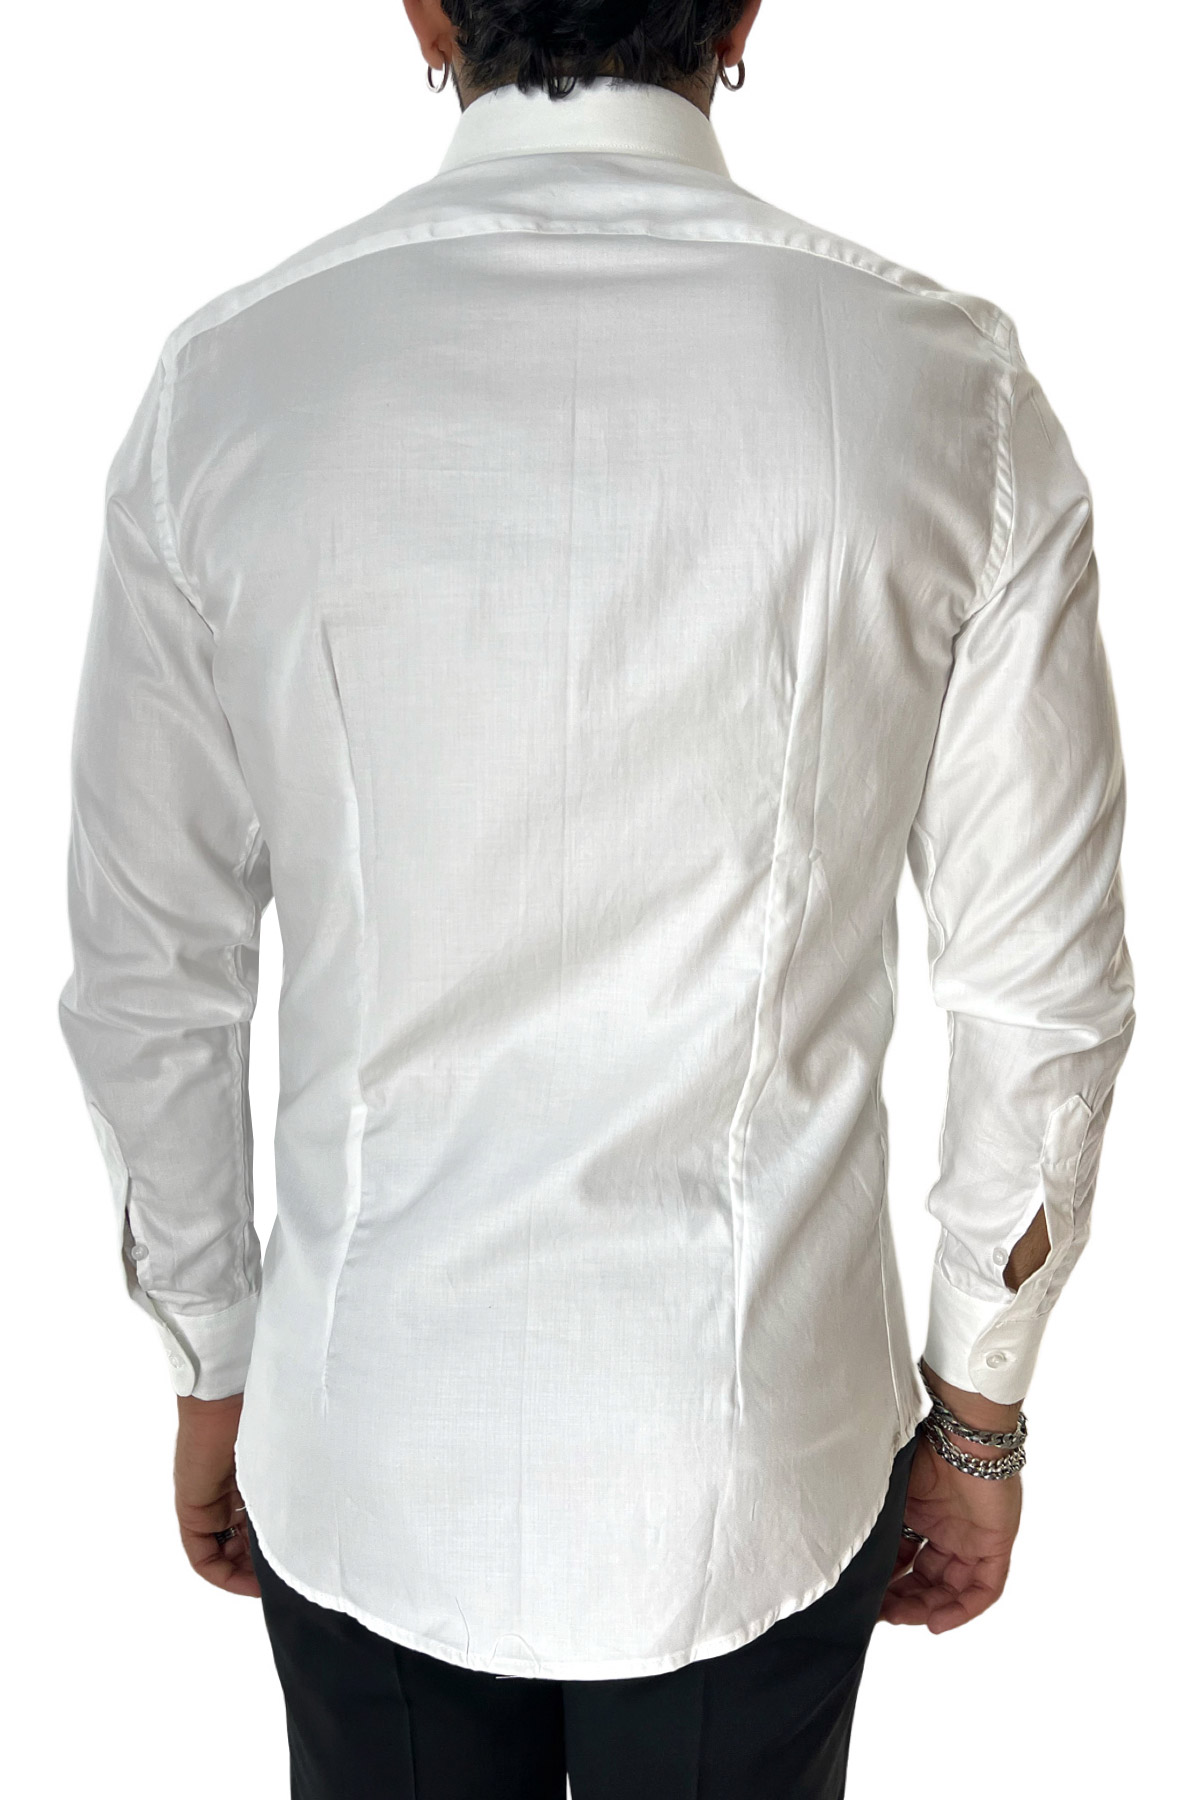 Camicia Uomo slim fit 100% cotone morbido effetto spigato tono su tono Collo semi francese tinta unita